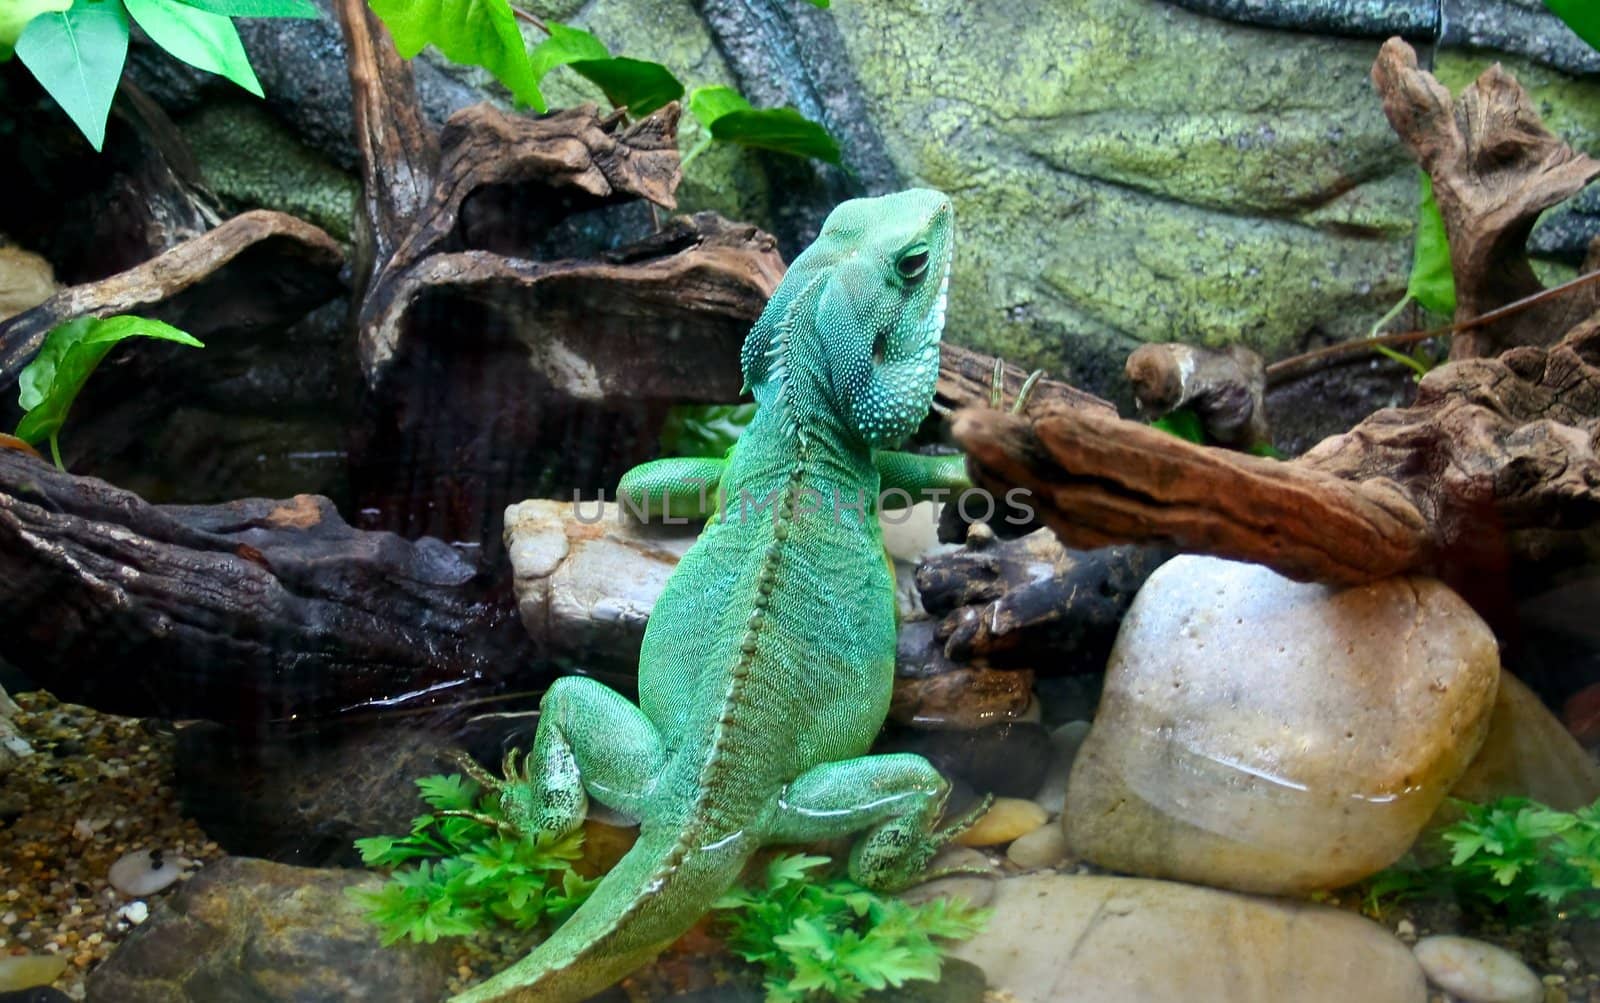 Big Lizard - Chameleon by vig64